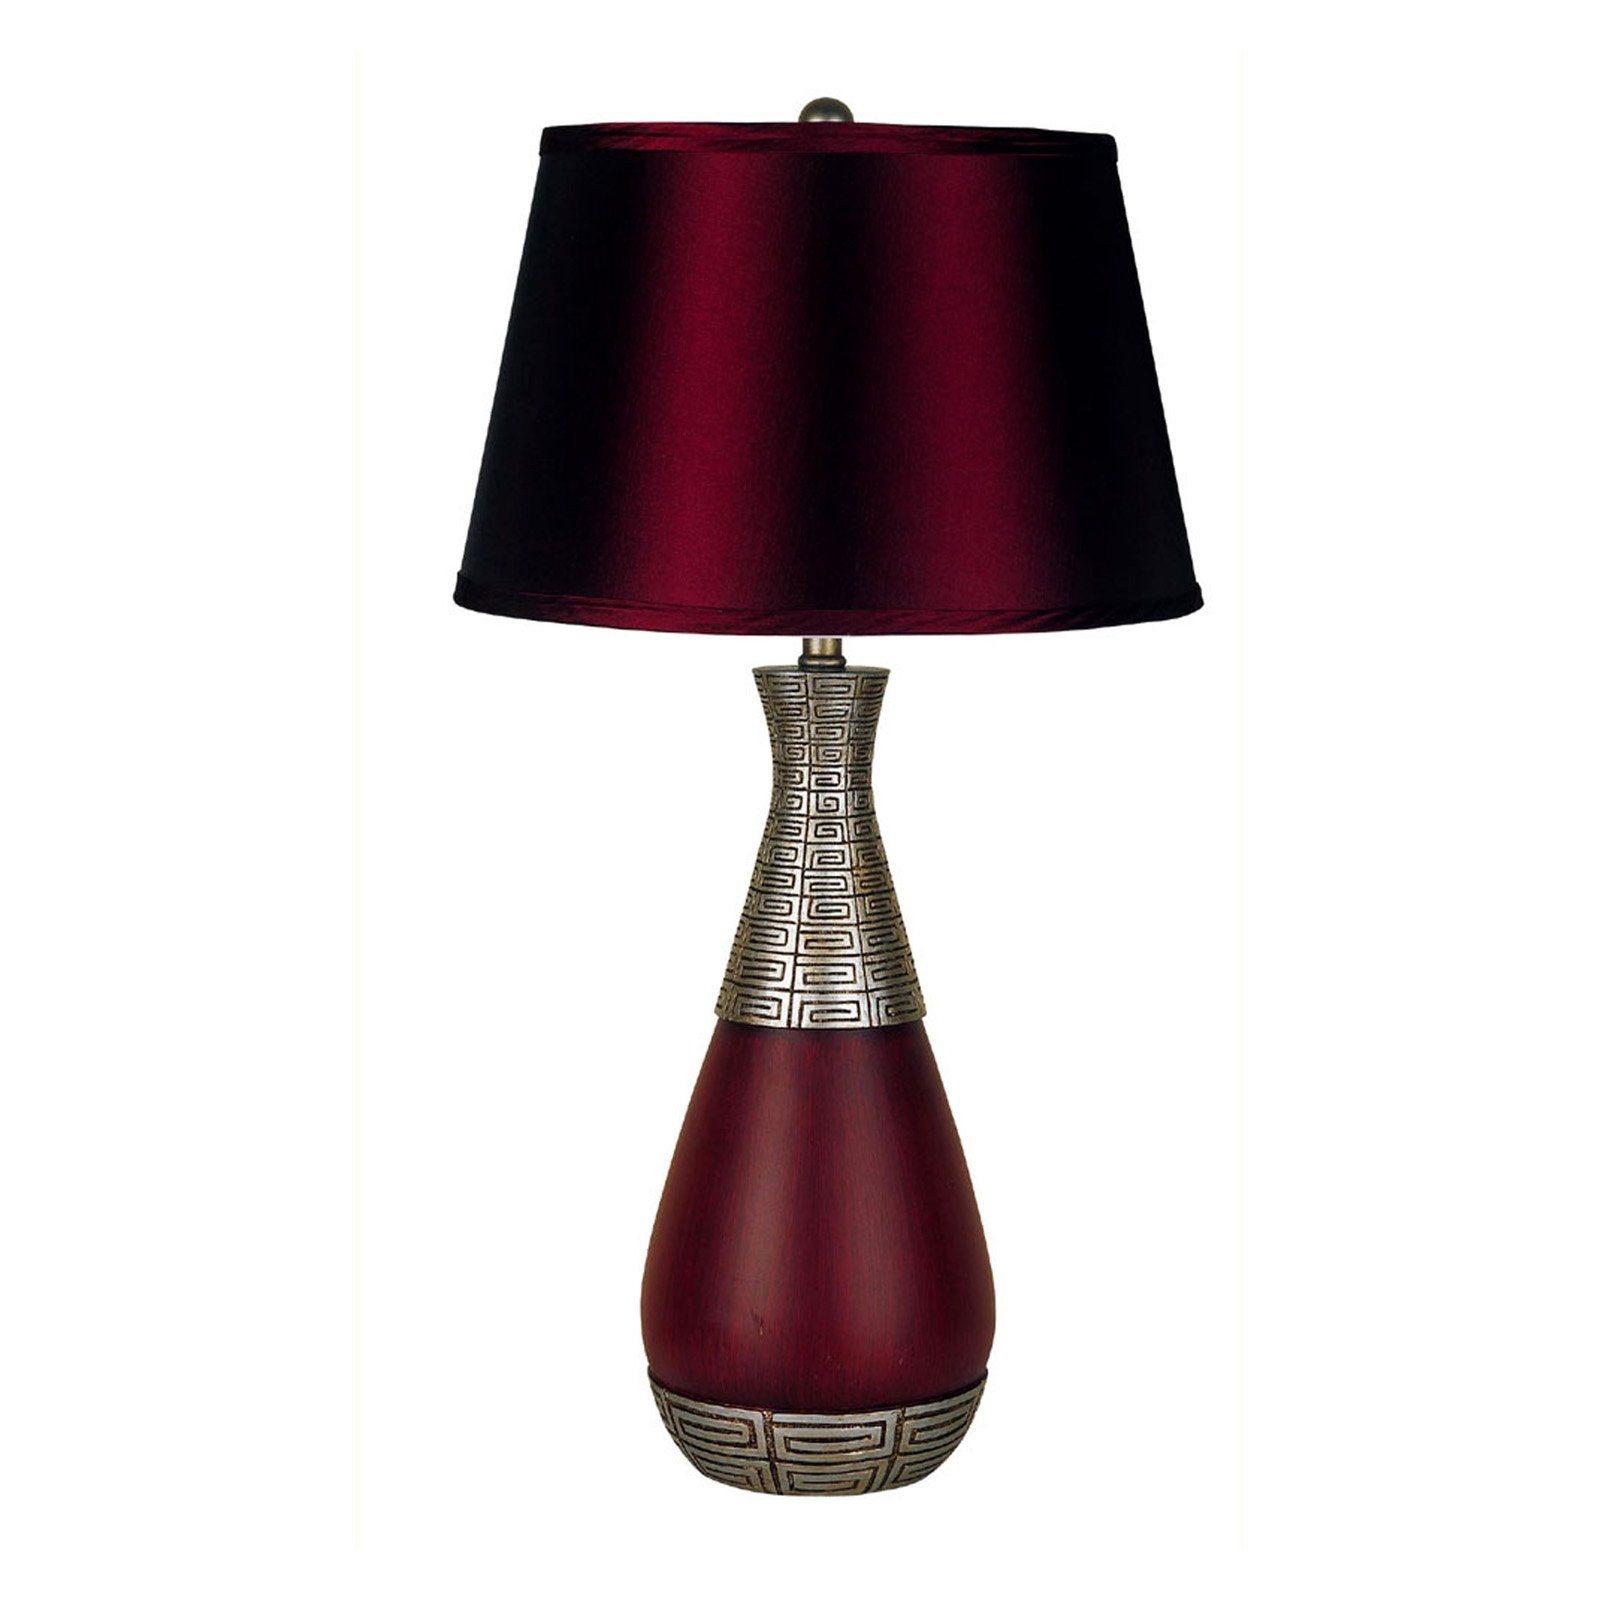 Burgundy lamp shades 3